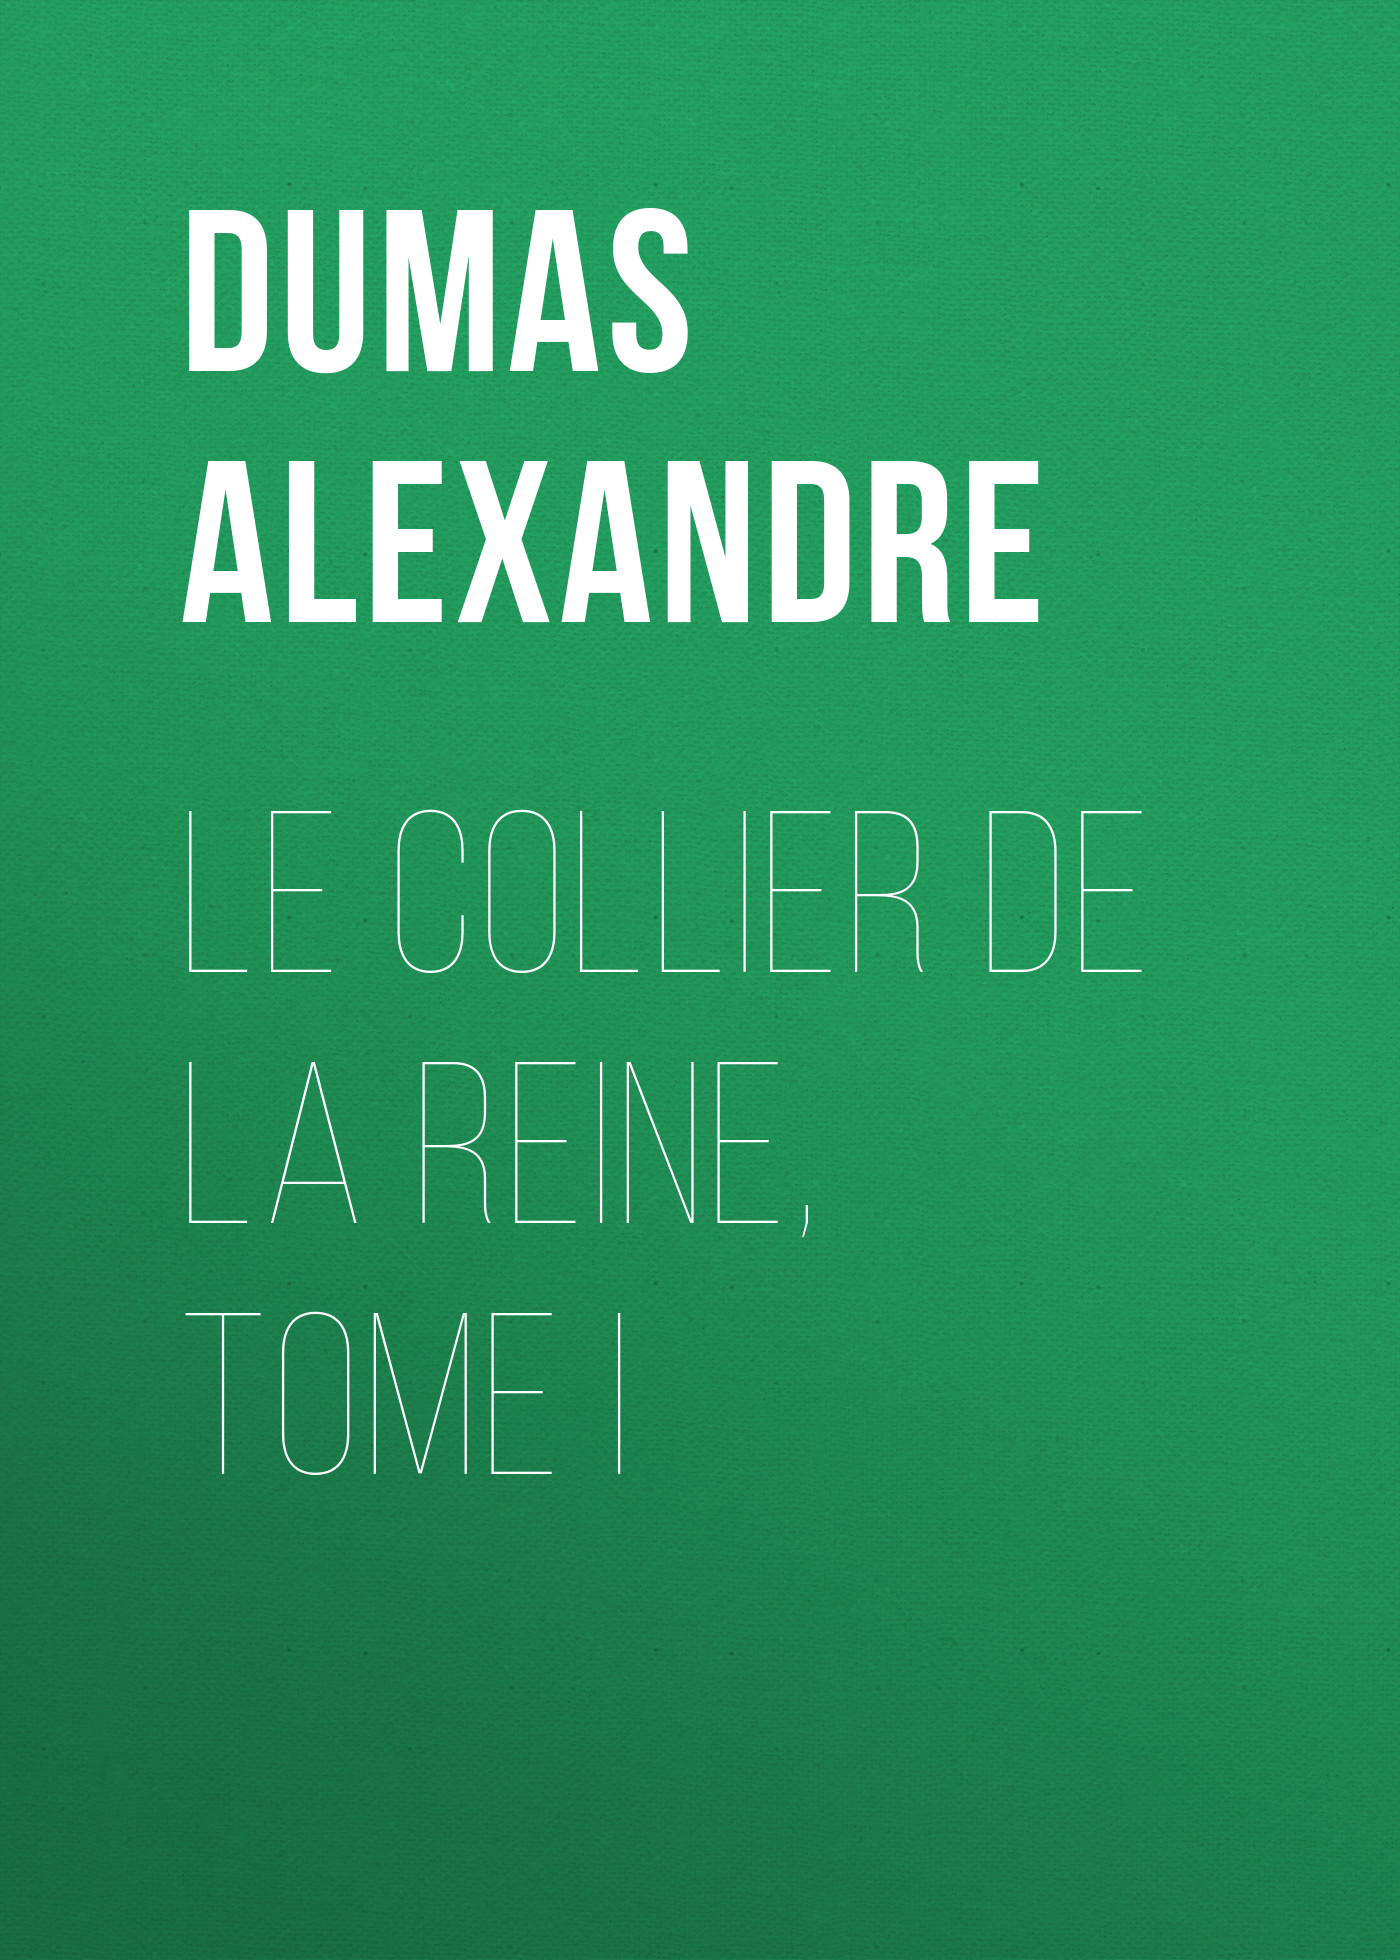 Книга Le Collier de la Reine, Tome I из серии , созданная Alexandre Dumas, может относится к жанру Литература 19 века, Зарубежная старинная литература, Зарубежная классика. Стоимость электронной книги Le Collier de la Reine, Tome I с идентификатором 25201799 составляет 0 руб.